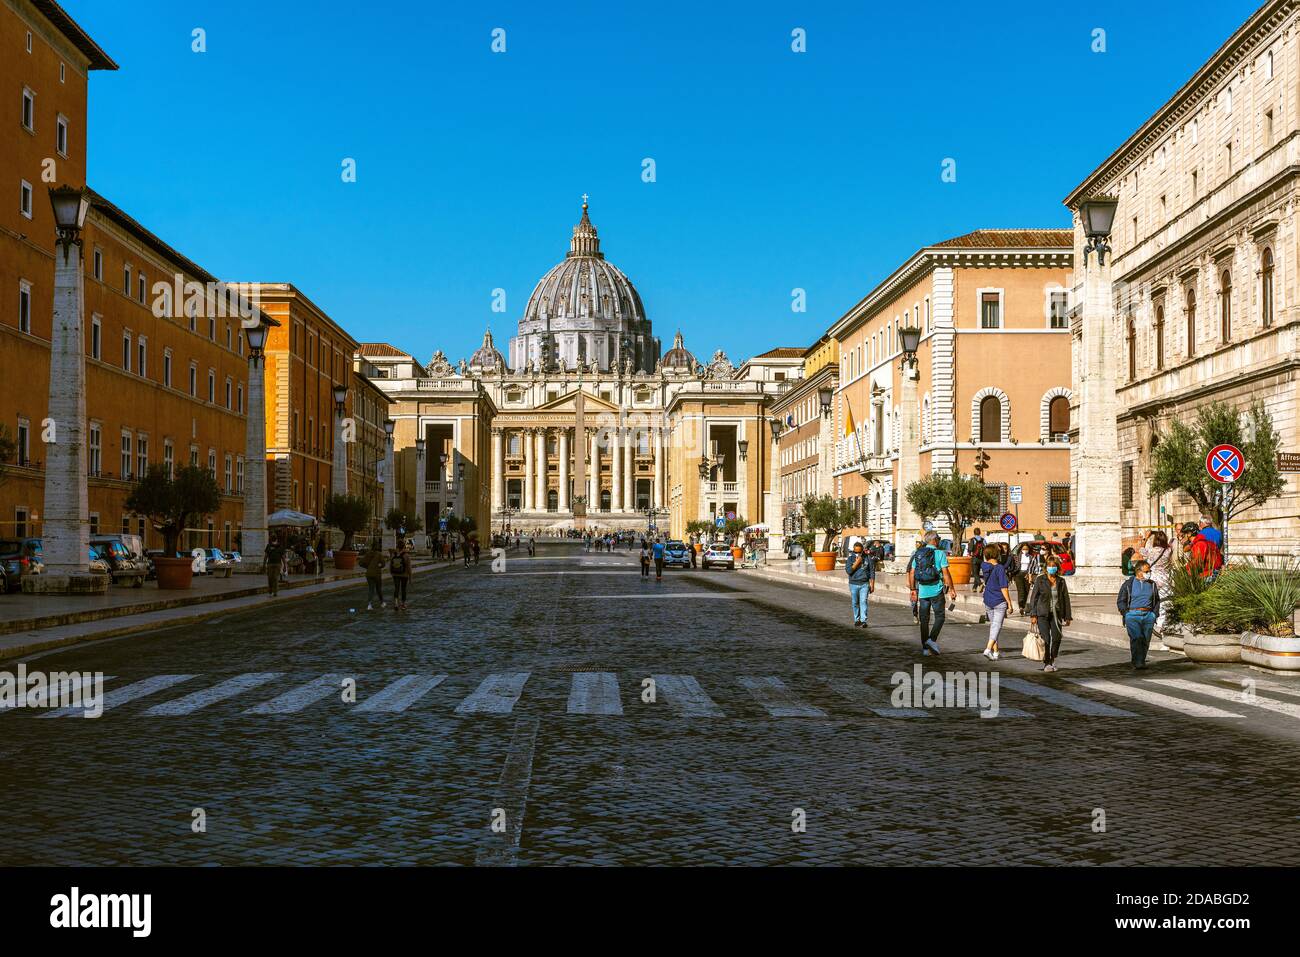 La basilique de San Pietro et la Piazza San Pietro avec sa colonnade. Vatican, Rome, Italie, Europe Banque D'Images